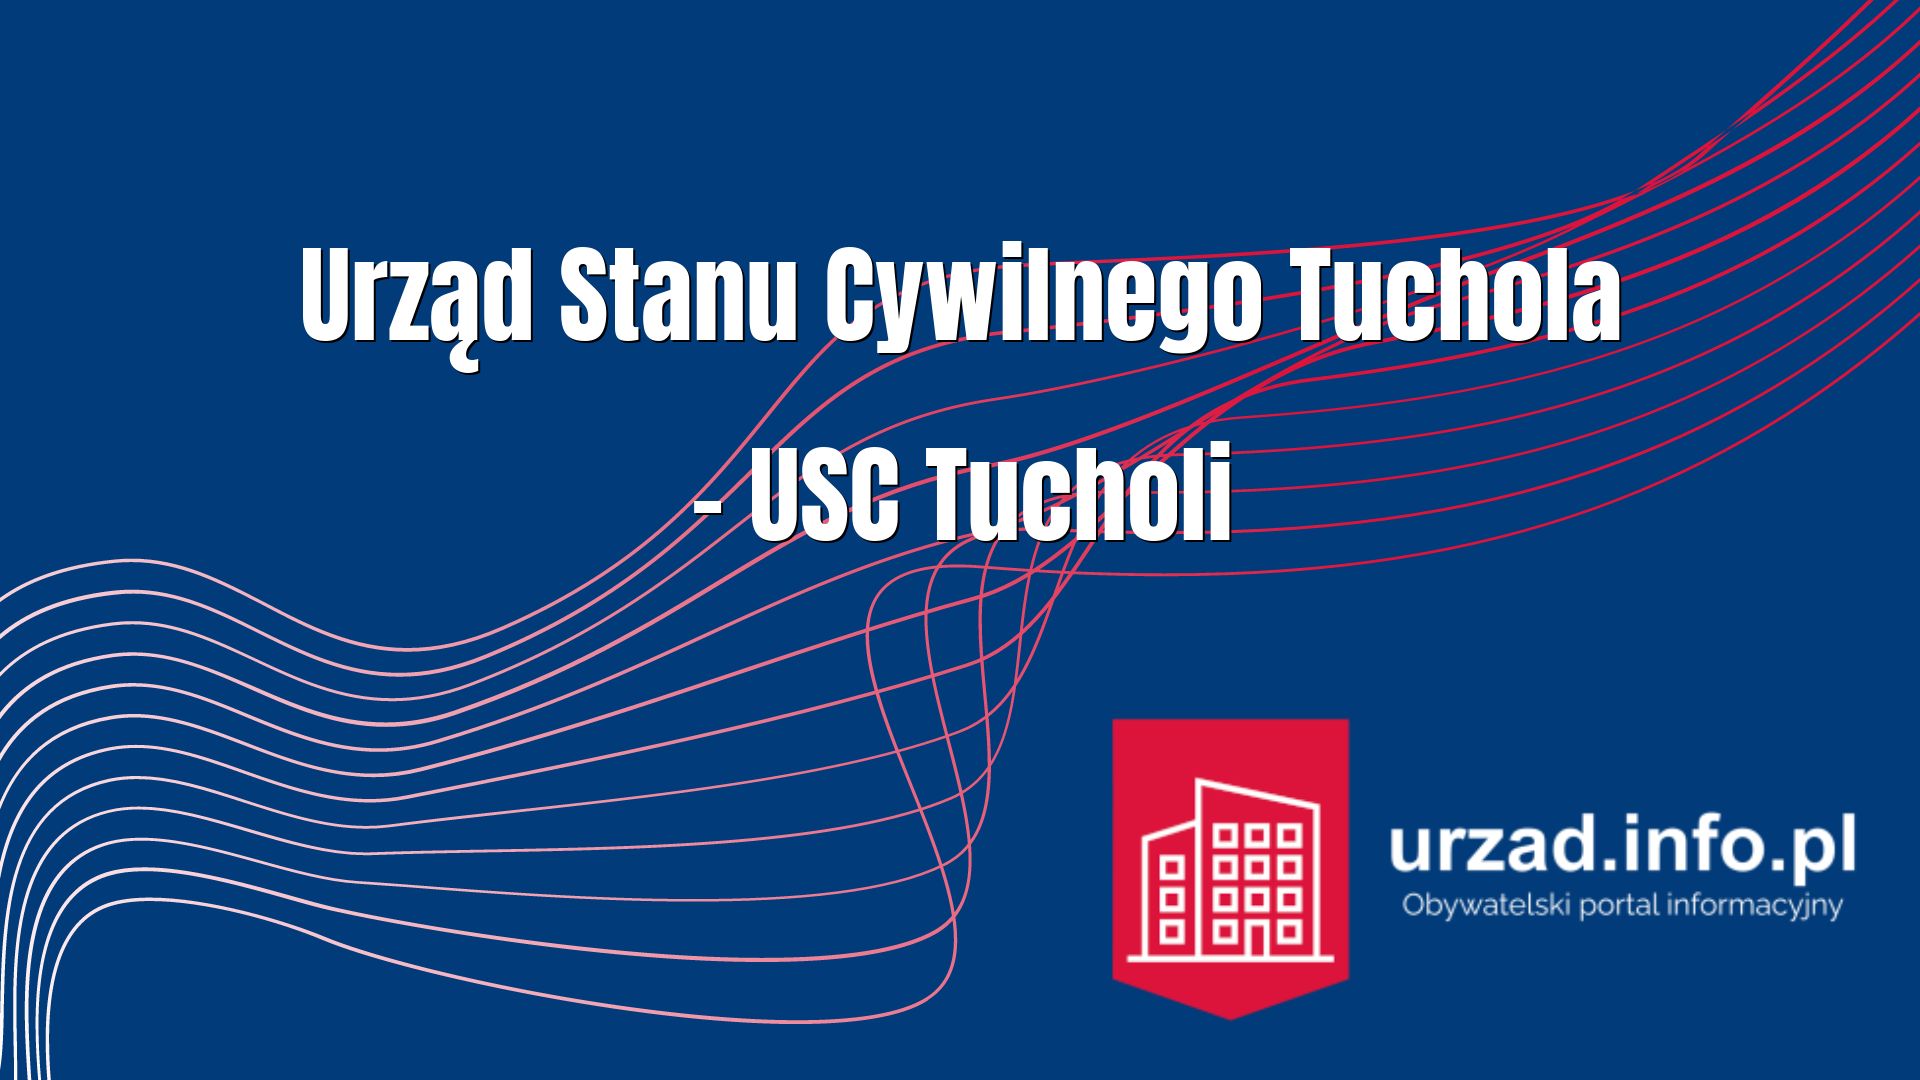 Urząd Stanu Cywilnego Tuchola – USC Tucholi